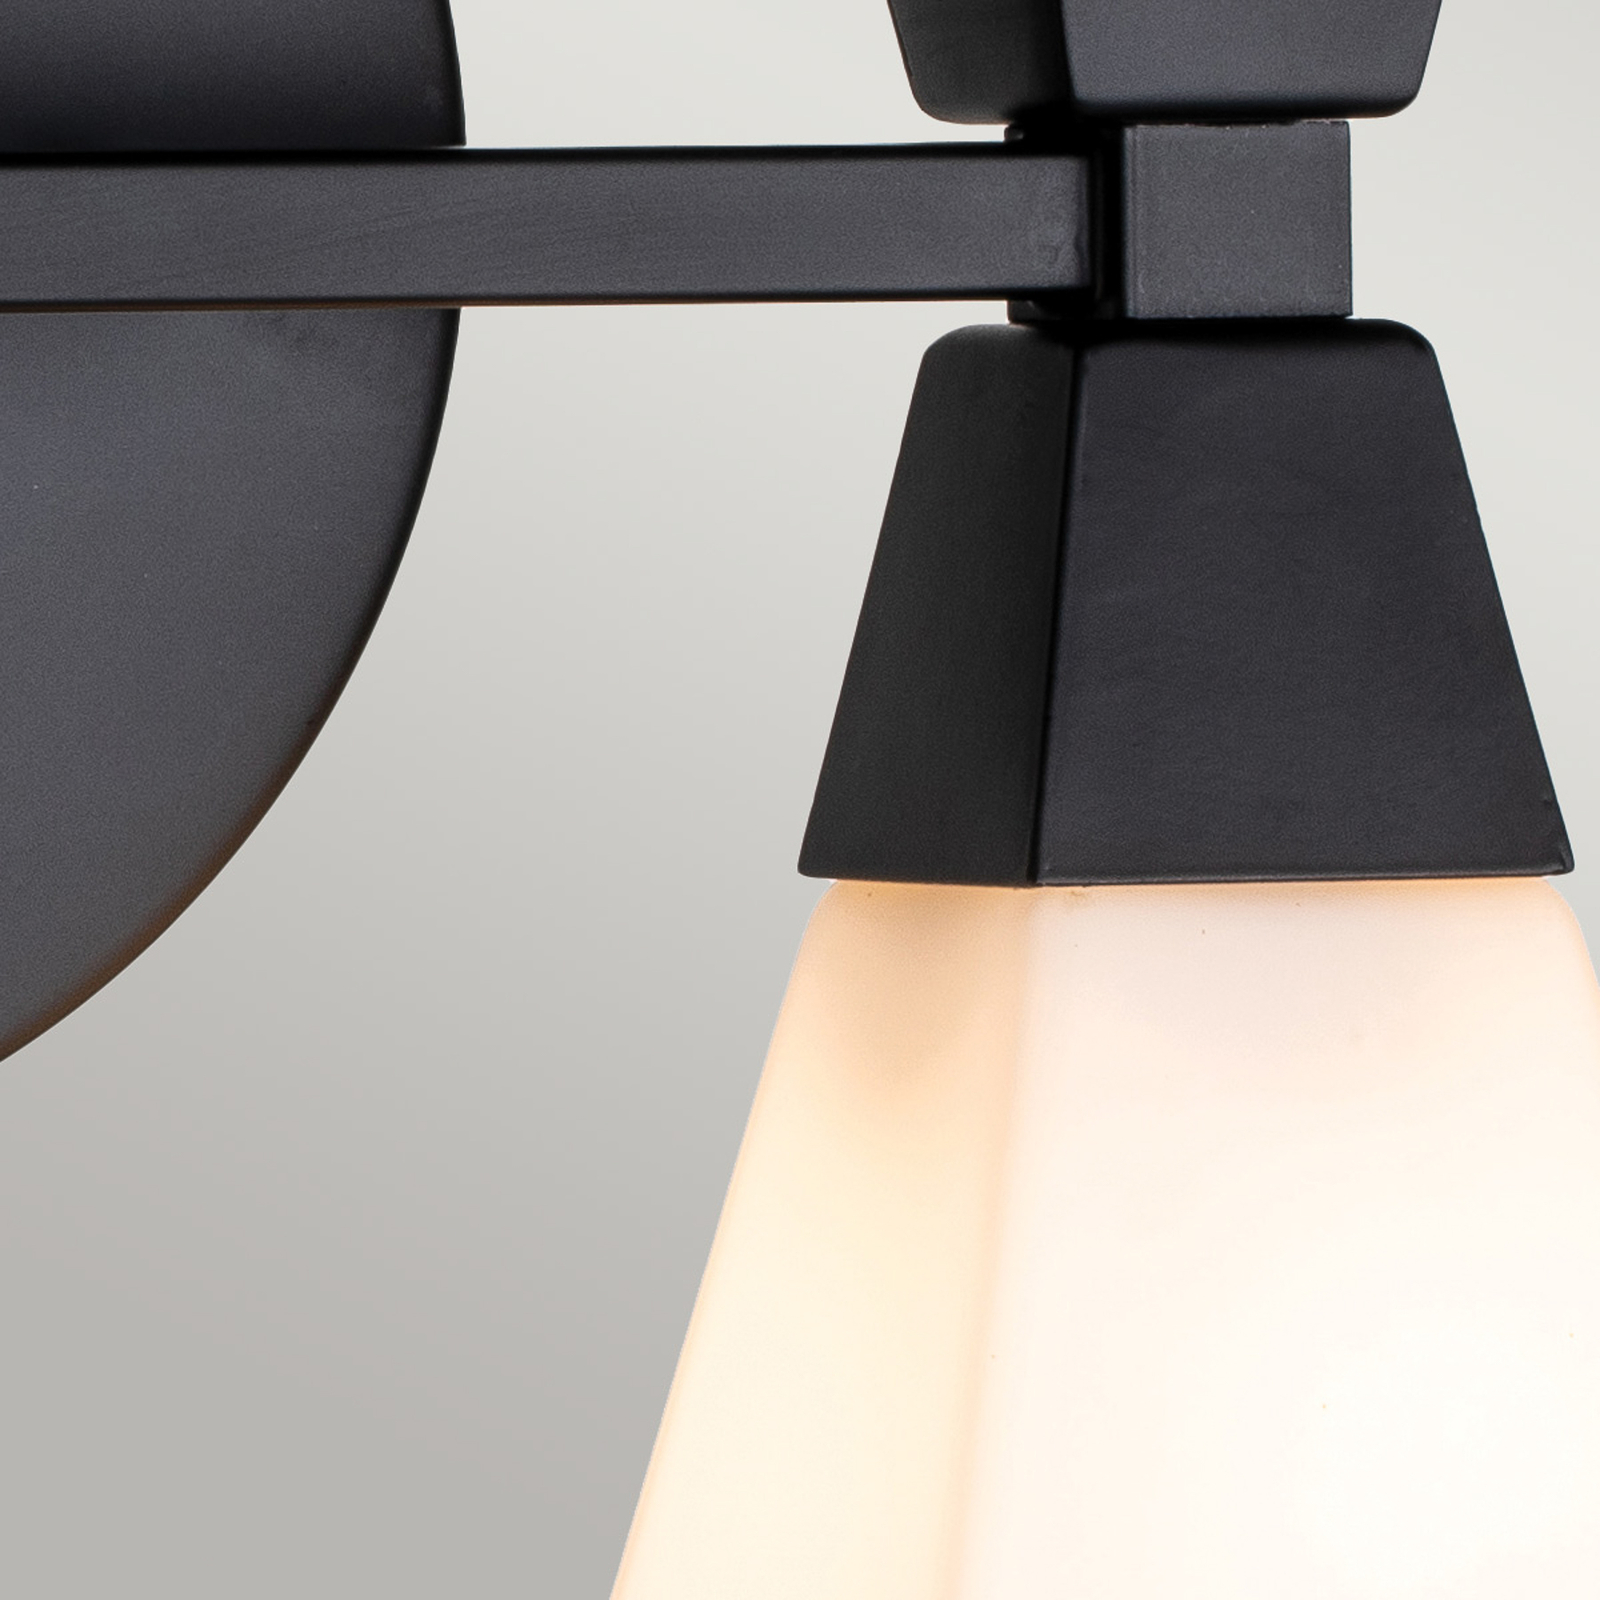 Badkamer wandlamp Bowtie, mat zwart, 2-lamps